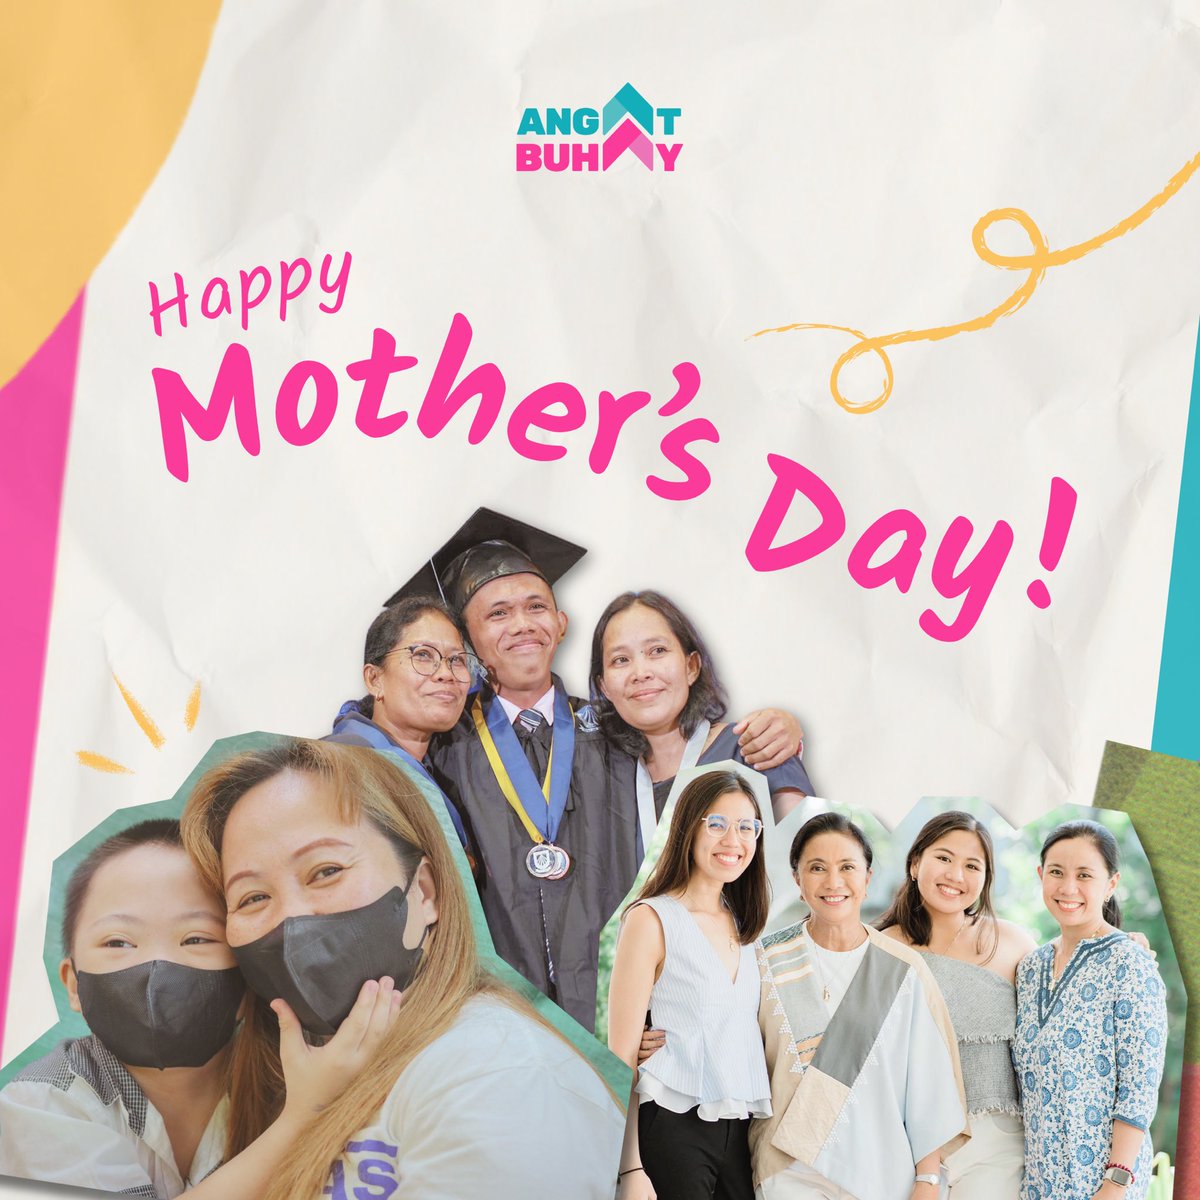 Happy Mother’s Day sa ilaw ng ating mga tahanan at sa lahat ng tumatayong ina para sa kanilang pamilya. 💗